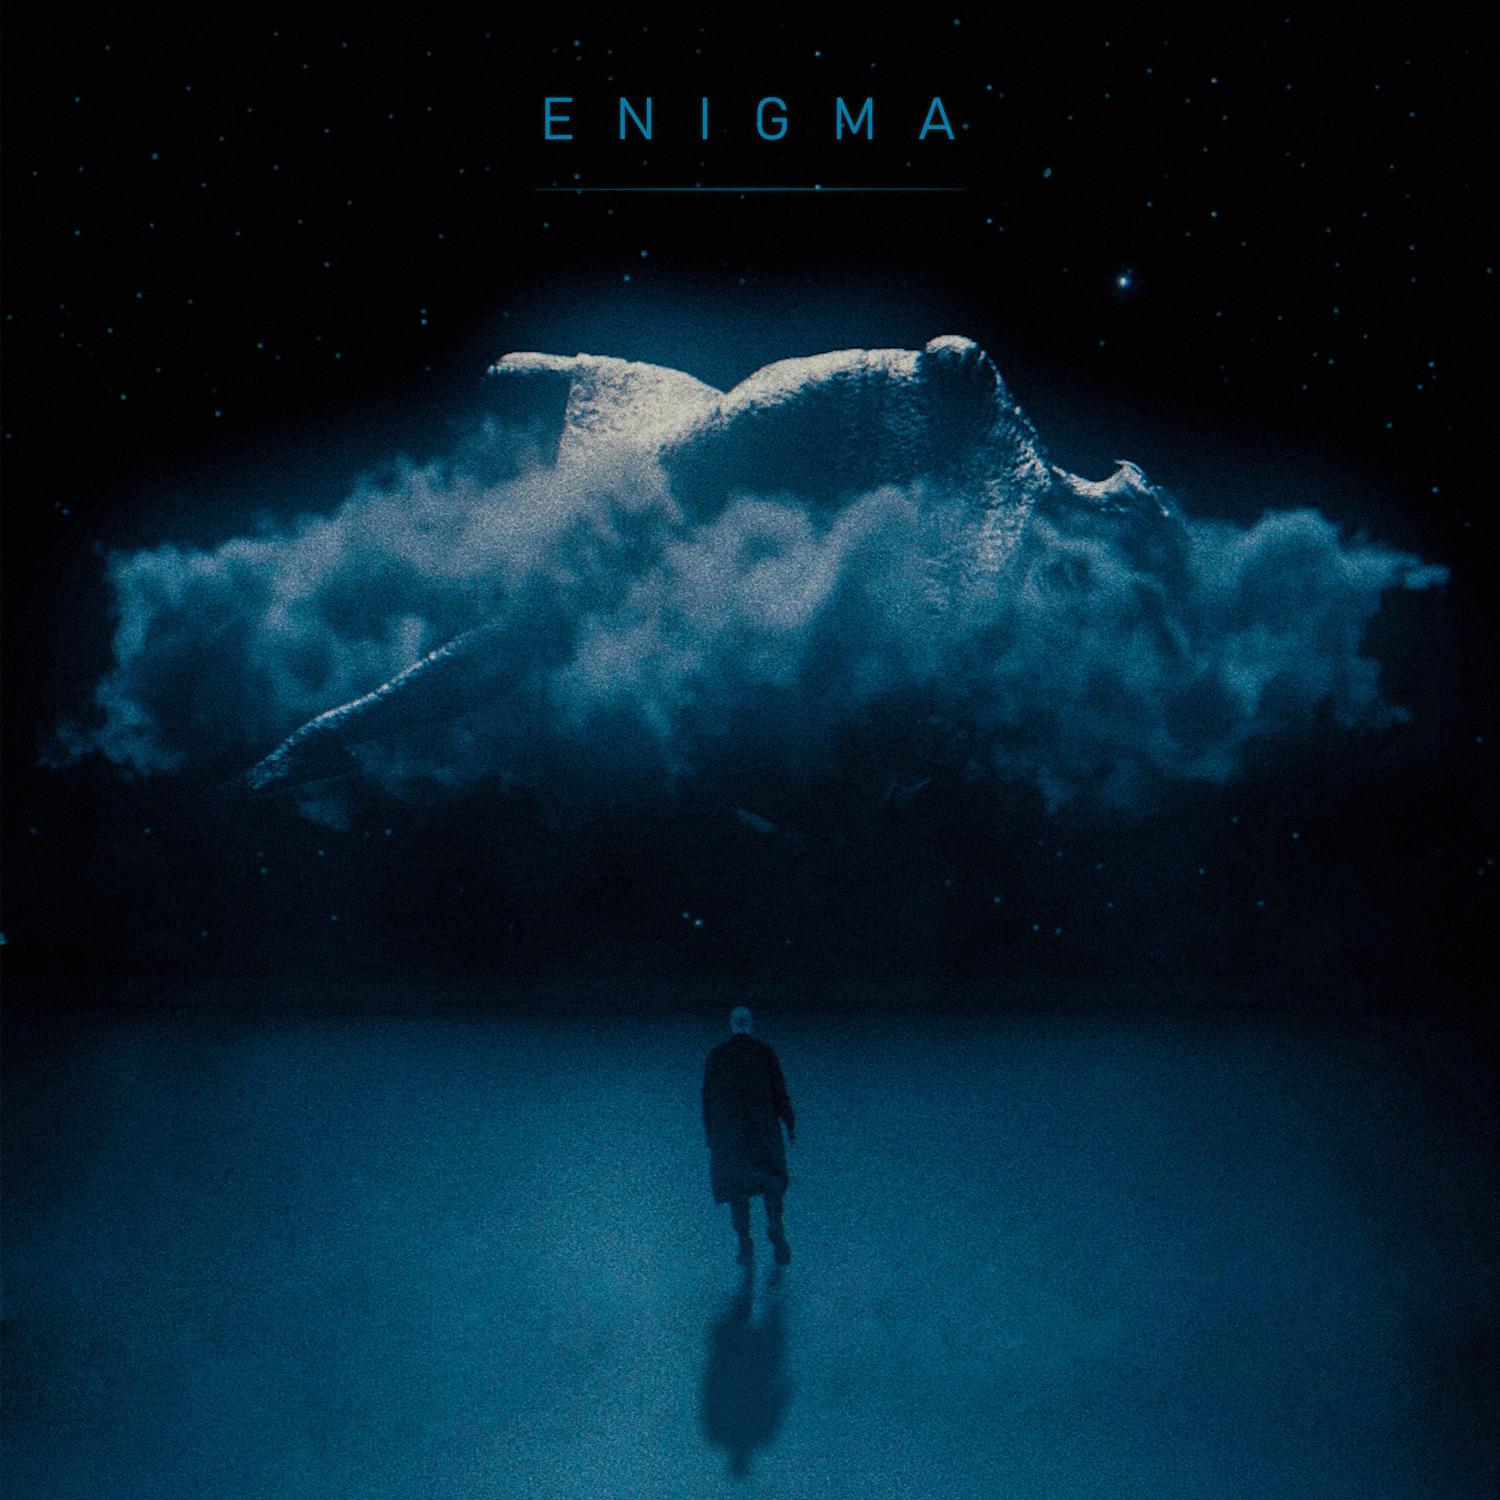 Enigma группа обложки. Энигма обложки альбомов. Обложка музыкального альбома инигма. The limba обложка.